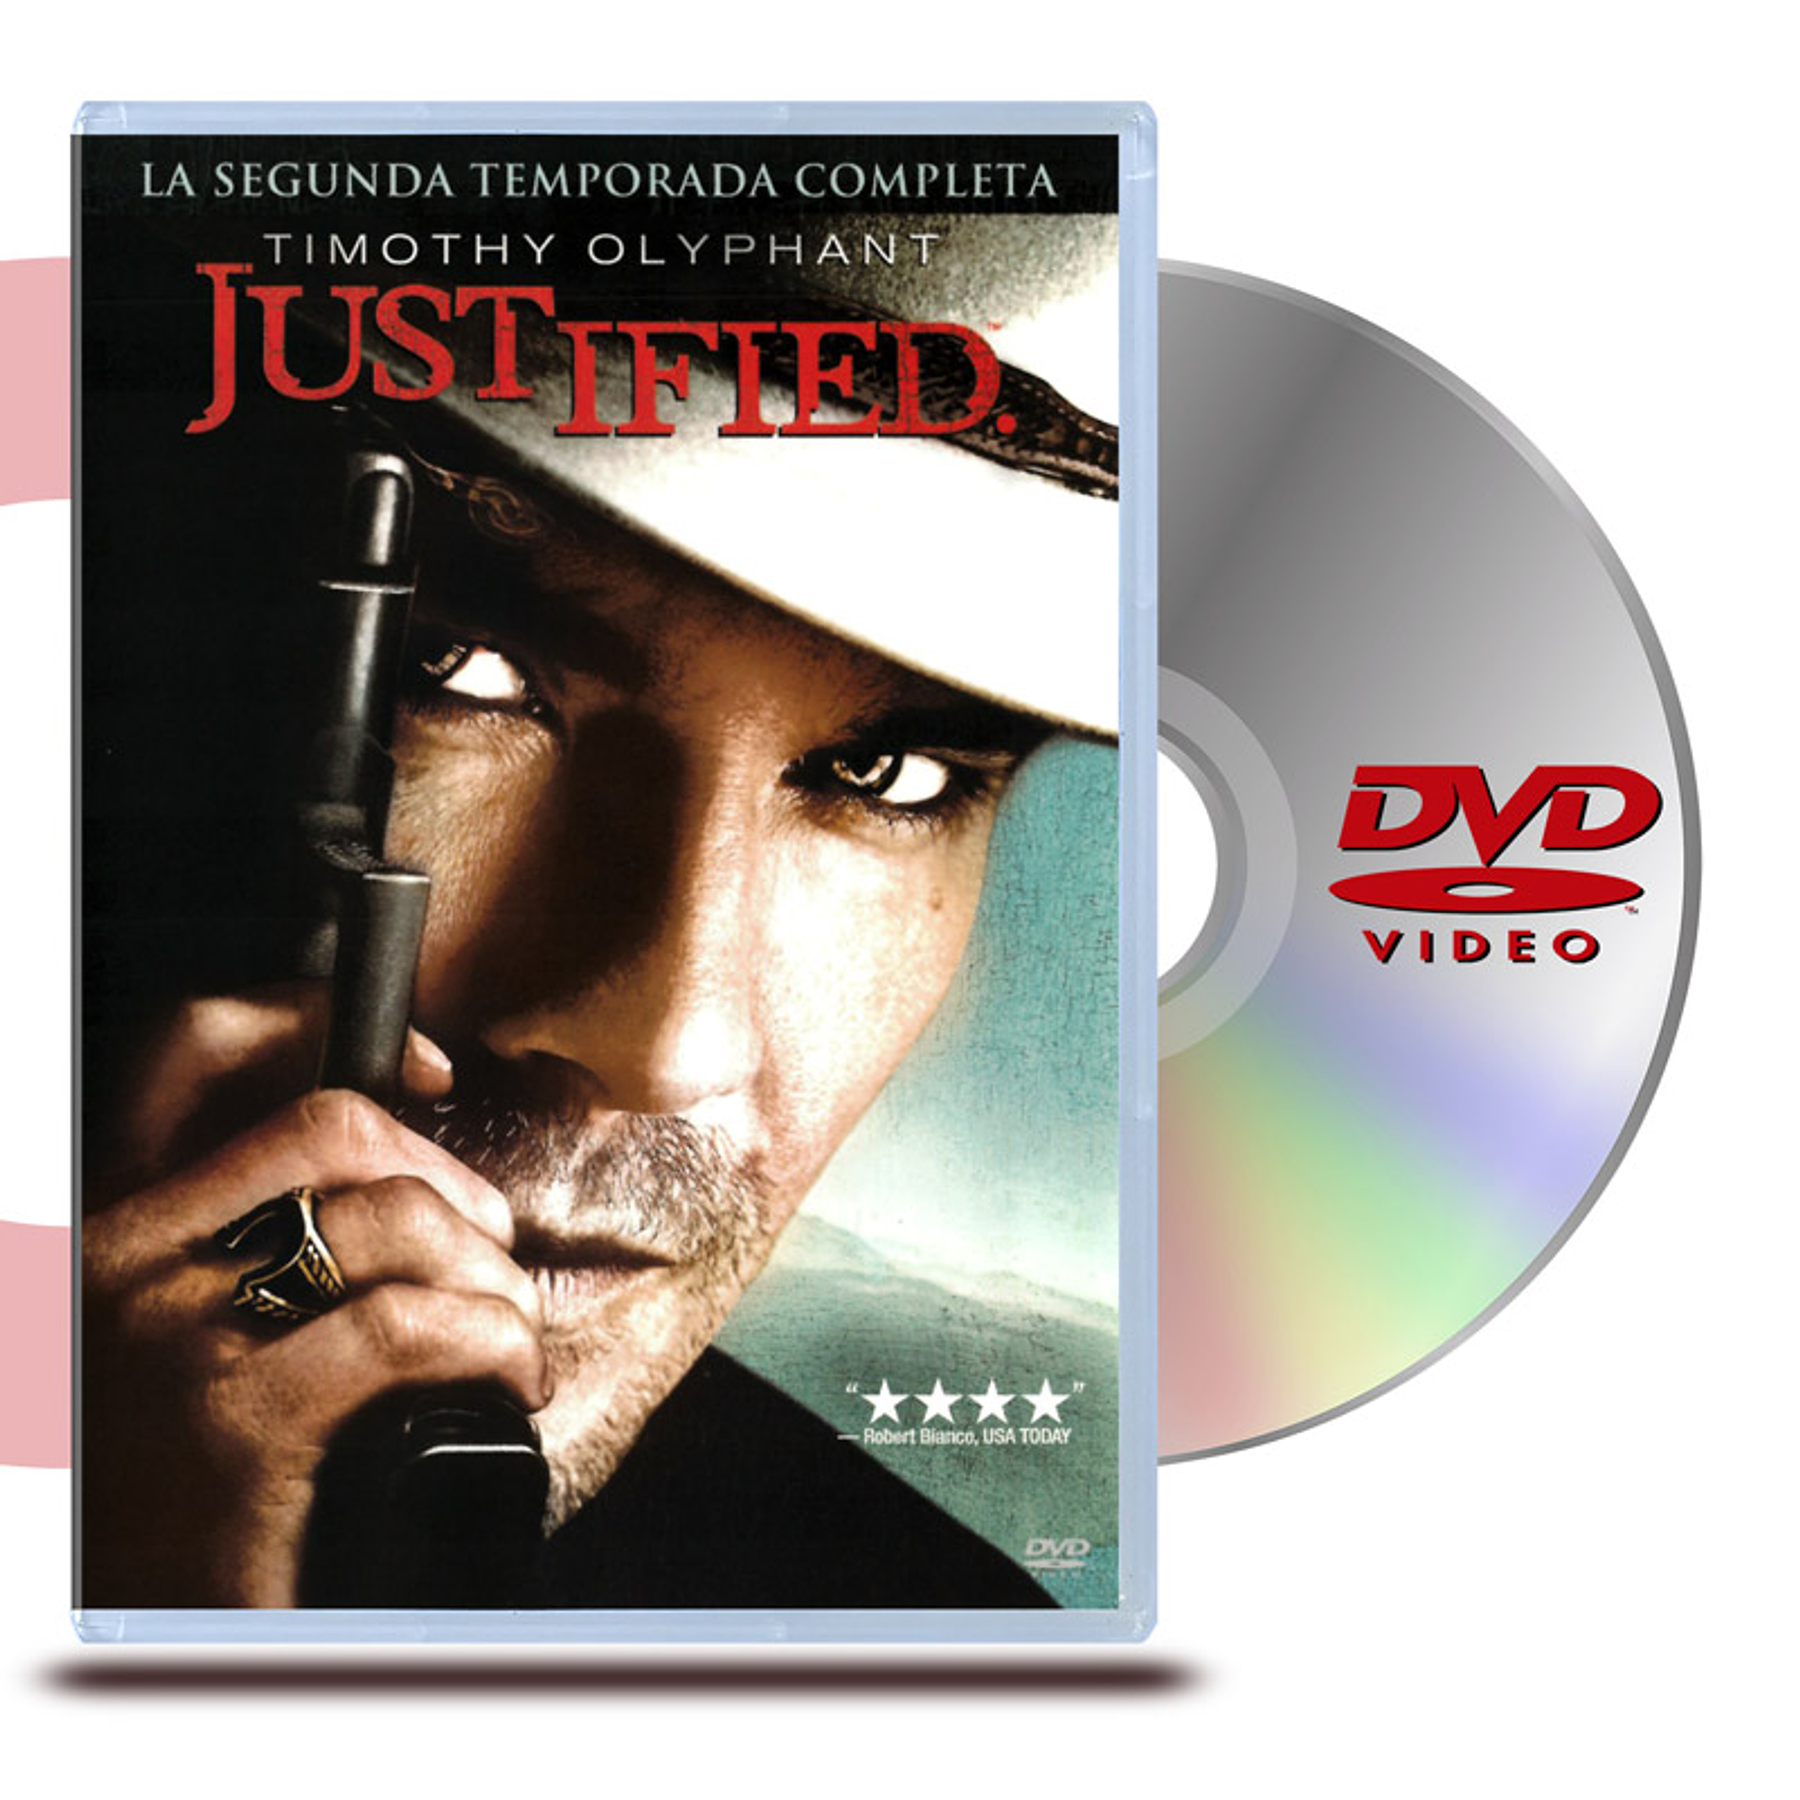 DVD JUSTIFIED: TEMPORADA 2